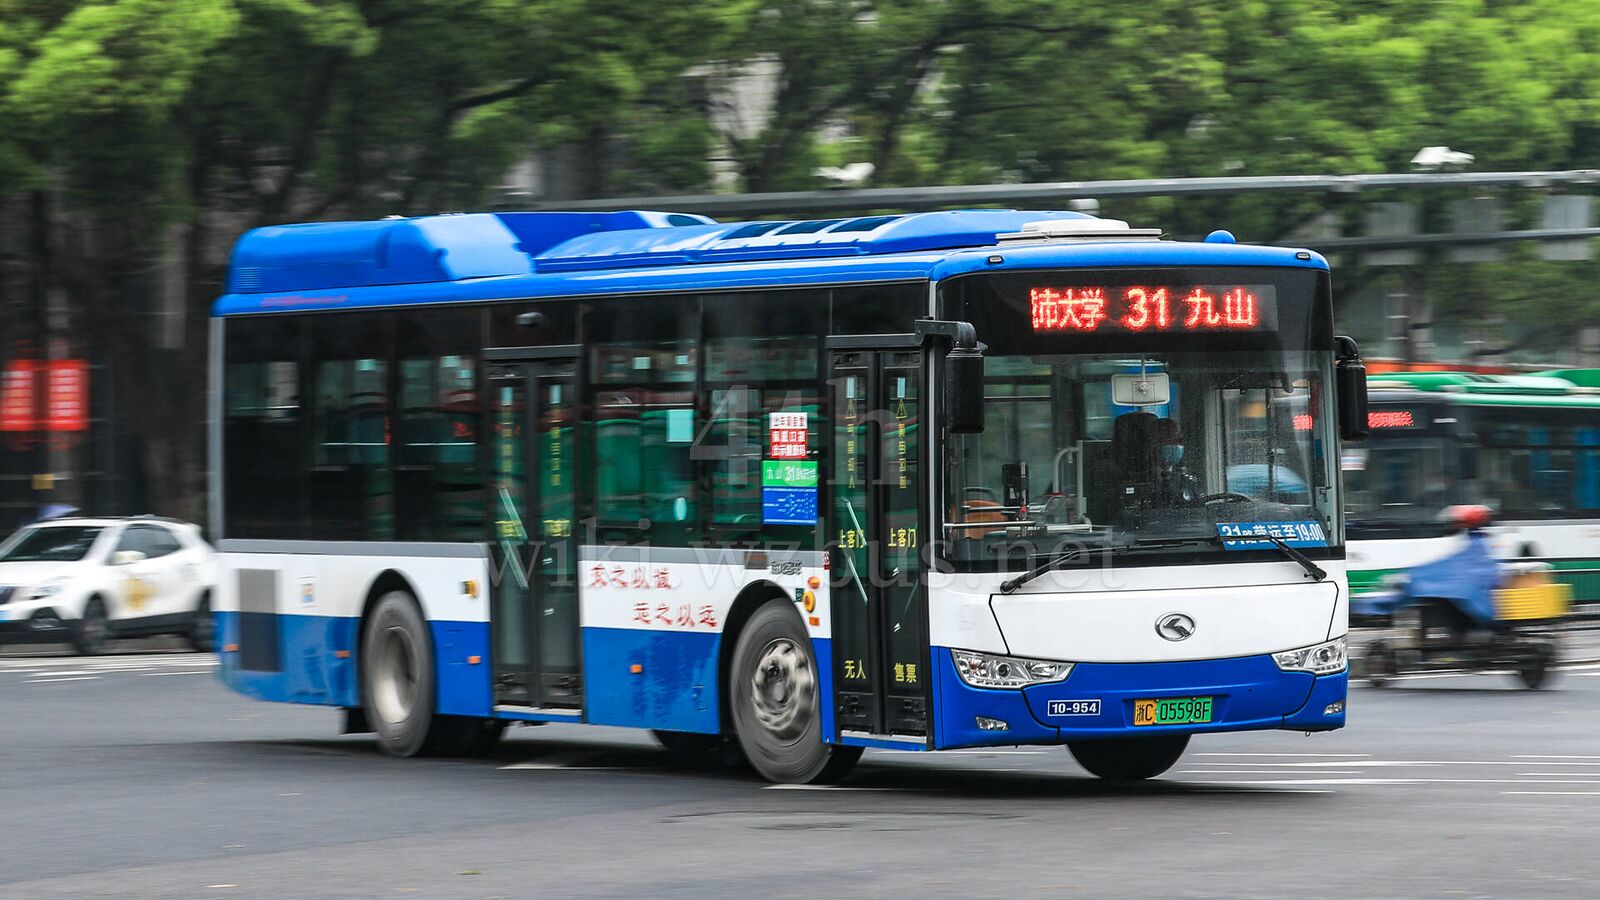 体验 自贡公交 新型观光巴士。(20图 带你坐一次) - 城市论坛 - 天府社区